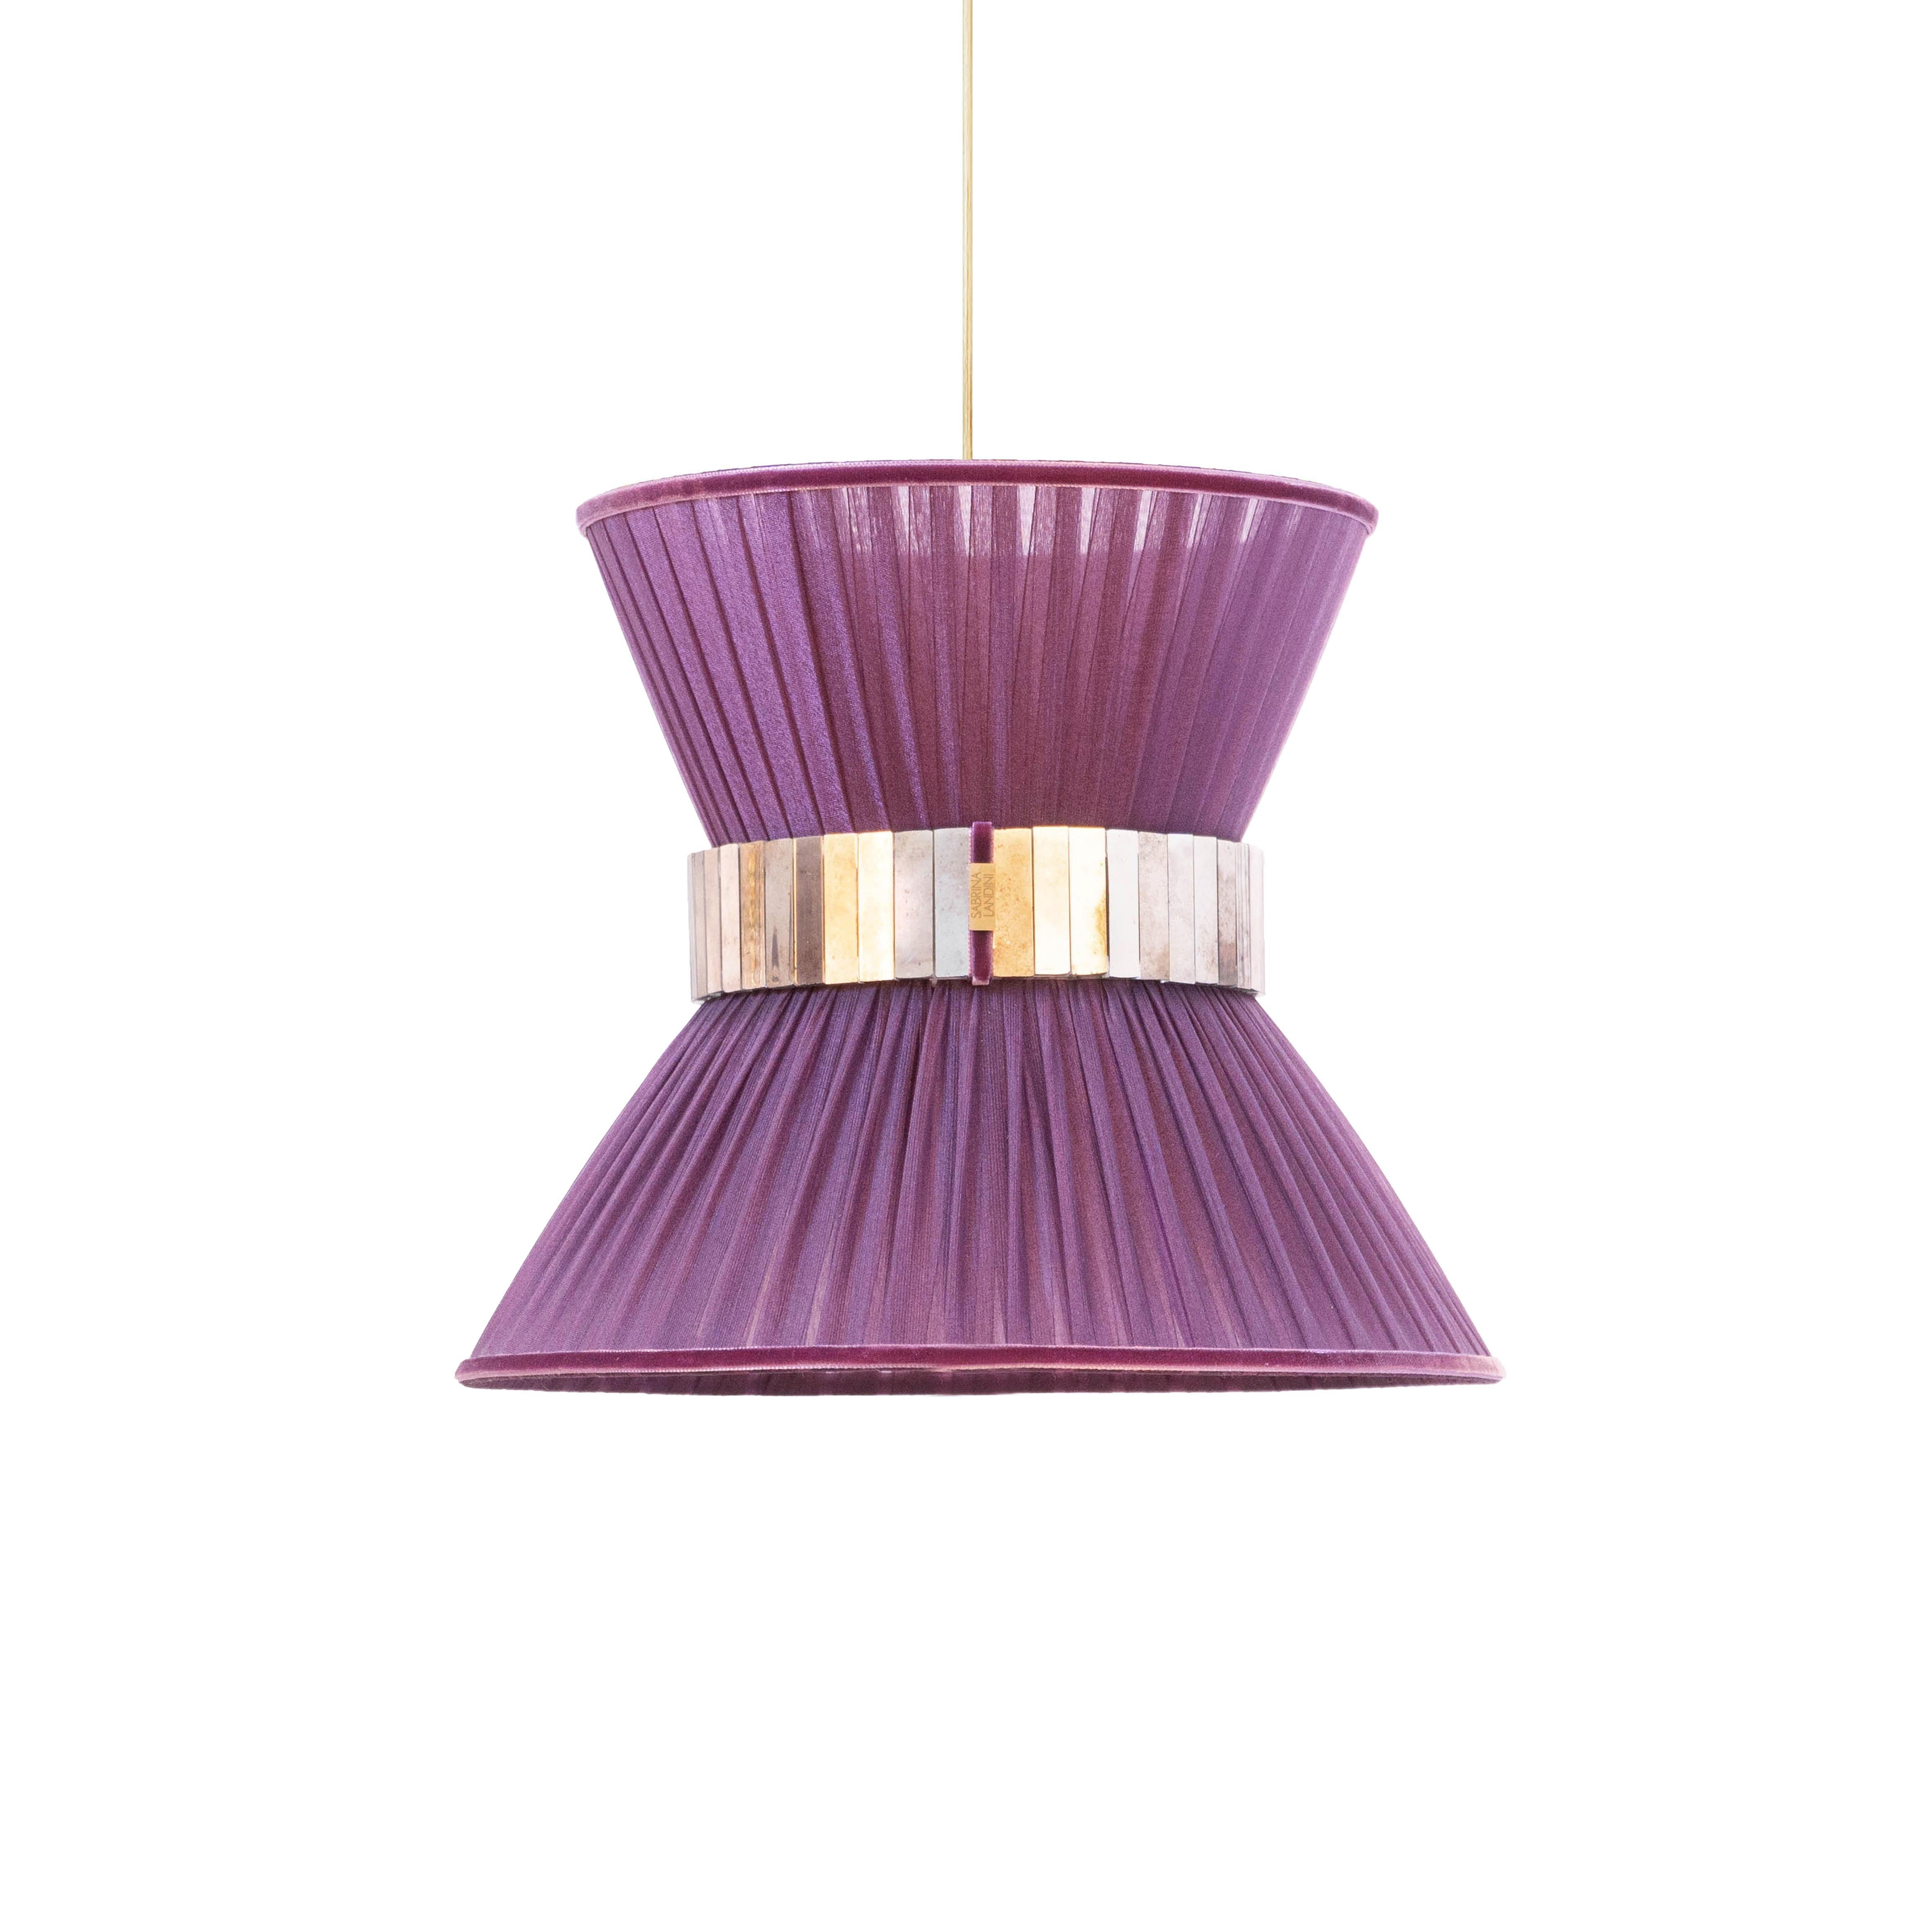 TIFFANY die kultige Lampe!

Seit 20 Jahren sind wir bestrebt, Ihnen einzigartige Collection'S in Bezug auf Design und Qualität anzubieten. Alle unsere kultigen Produkte werden in unserem Atelier in der Toskana, Italien, nach einem uralten